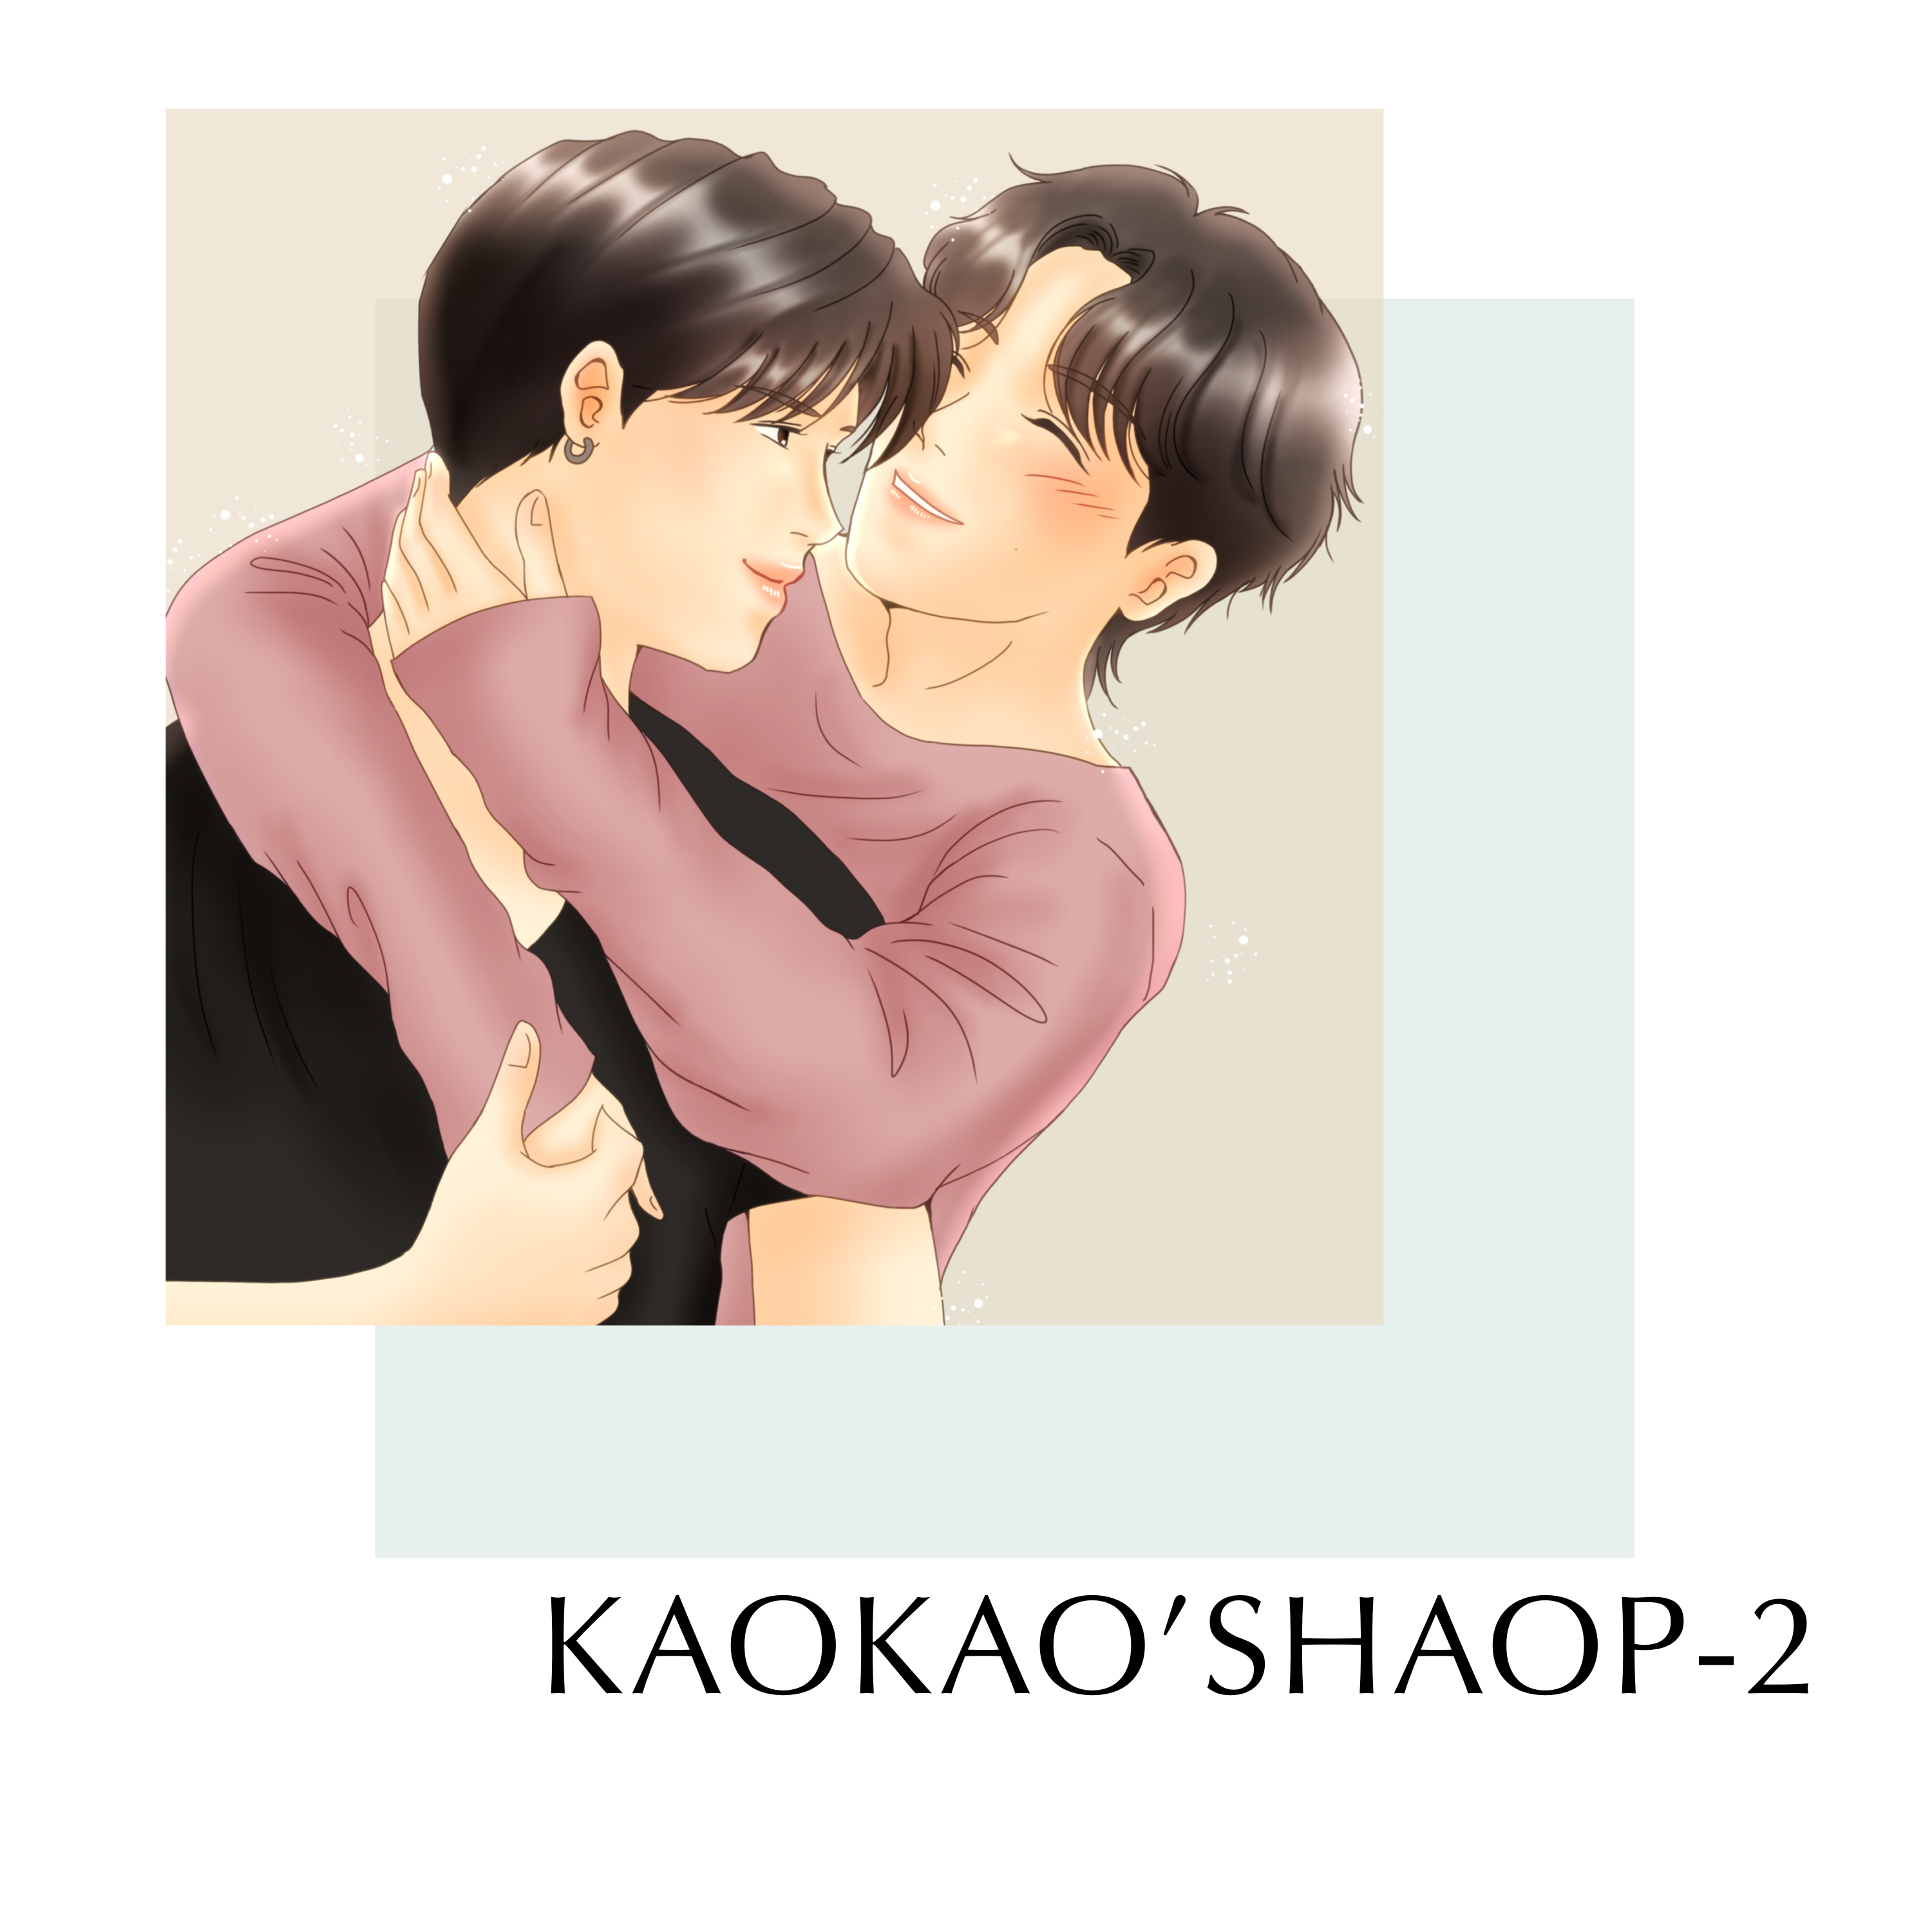 KAOKAO’S SHOP-2